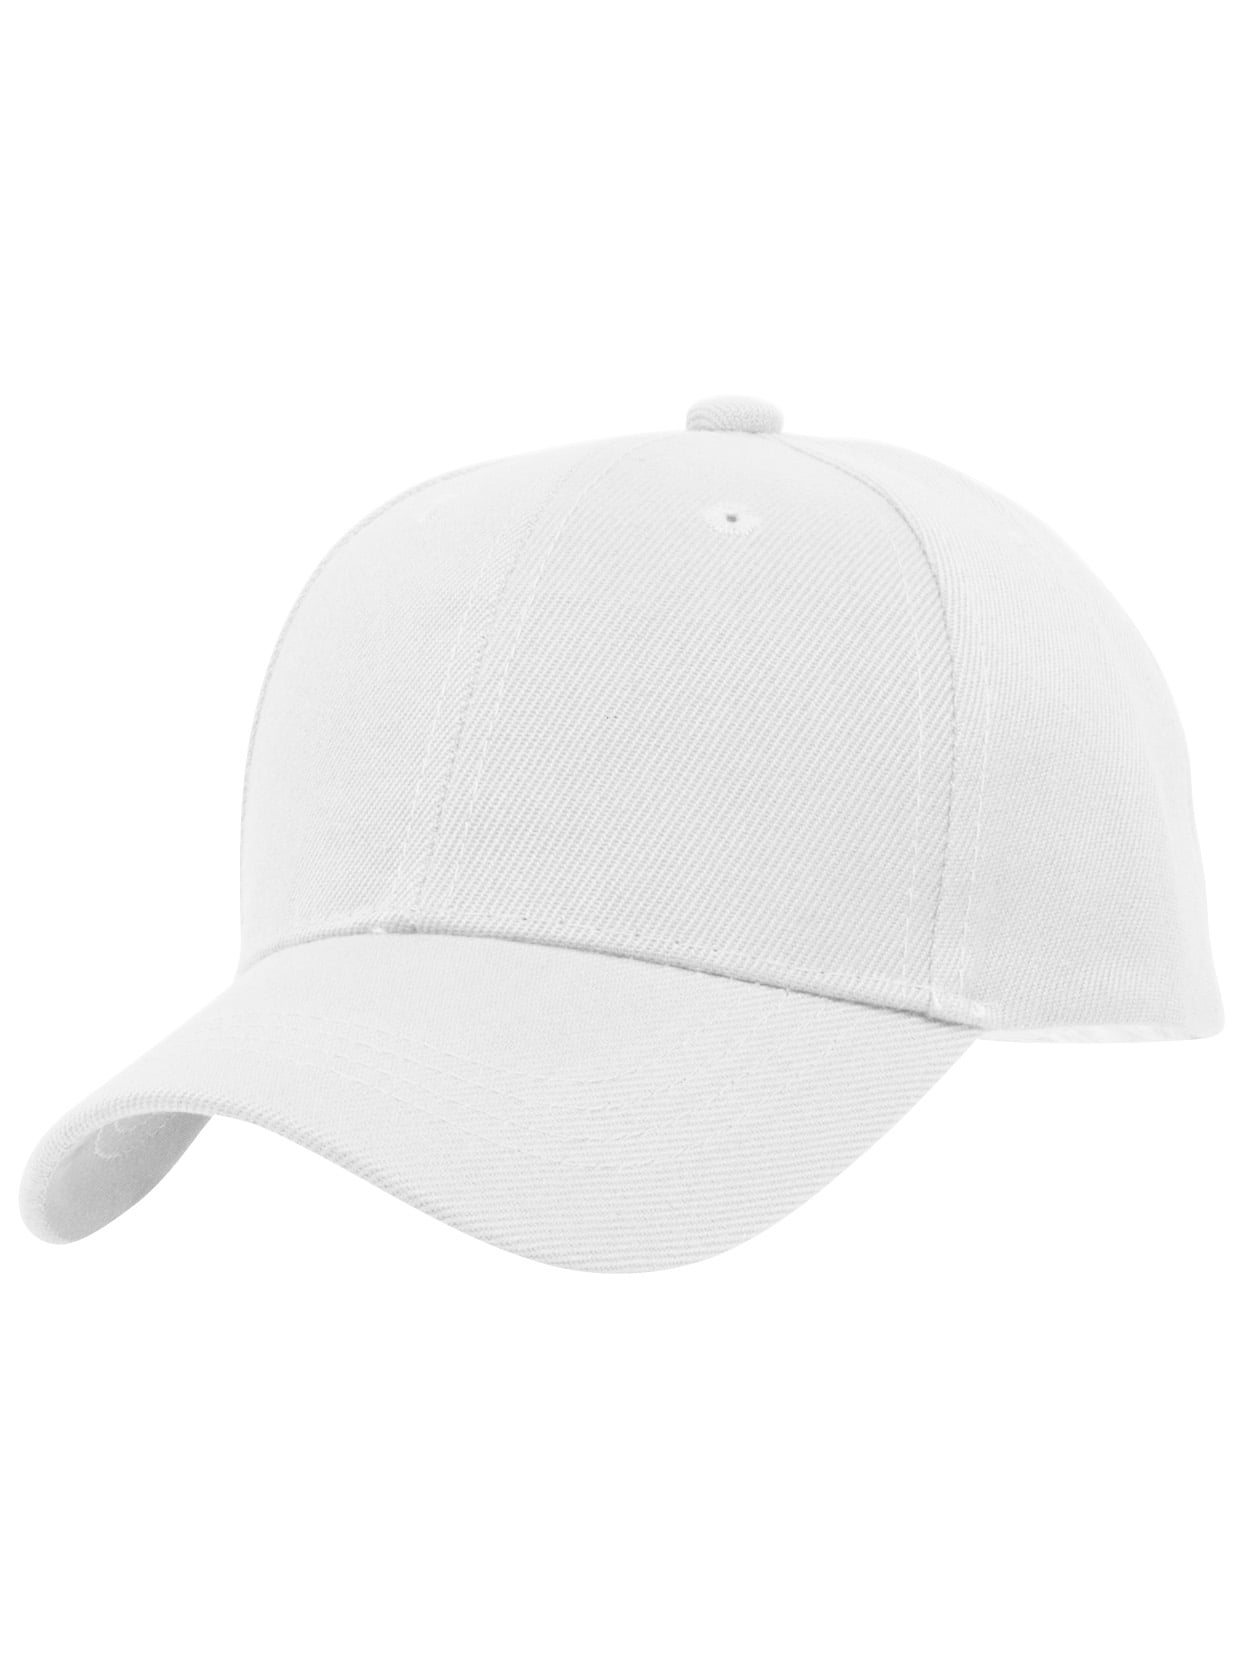 TOP HEADWEAR TopHeadwear Blank Kids Youth Baseball Adjustable Hook and Loop Closure Hat 